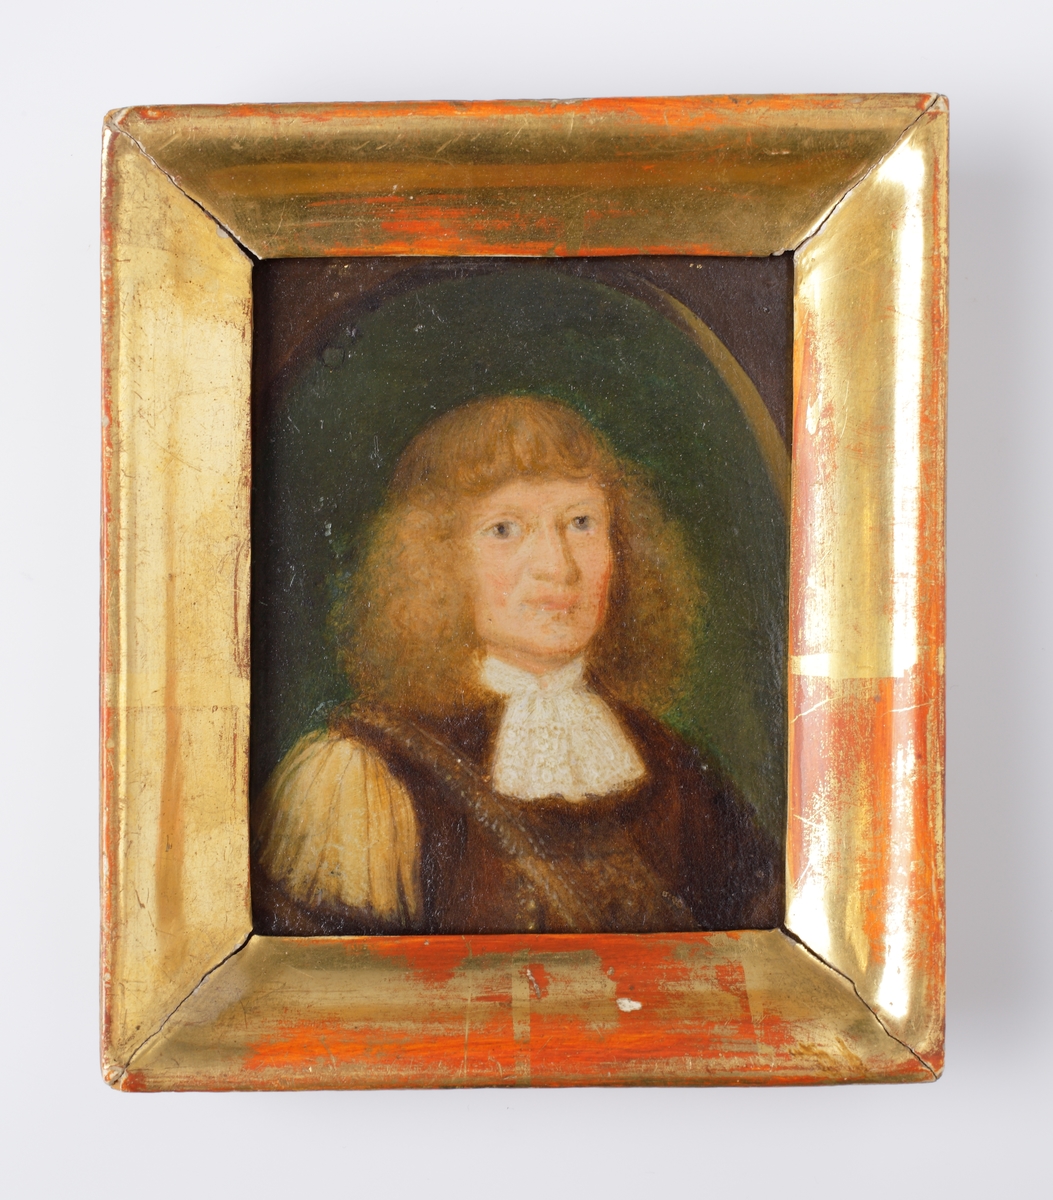 Oljemålning
Porträtt av ljushårig man i 1600-talsdräkt i brunt och vitt. Bröstbild, halvprofil. 
Ej signerad. 
Förgylld, profilerad ram.